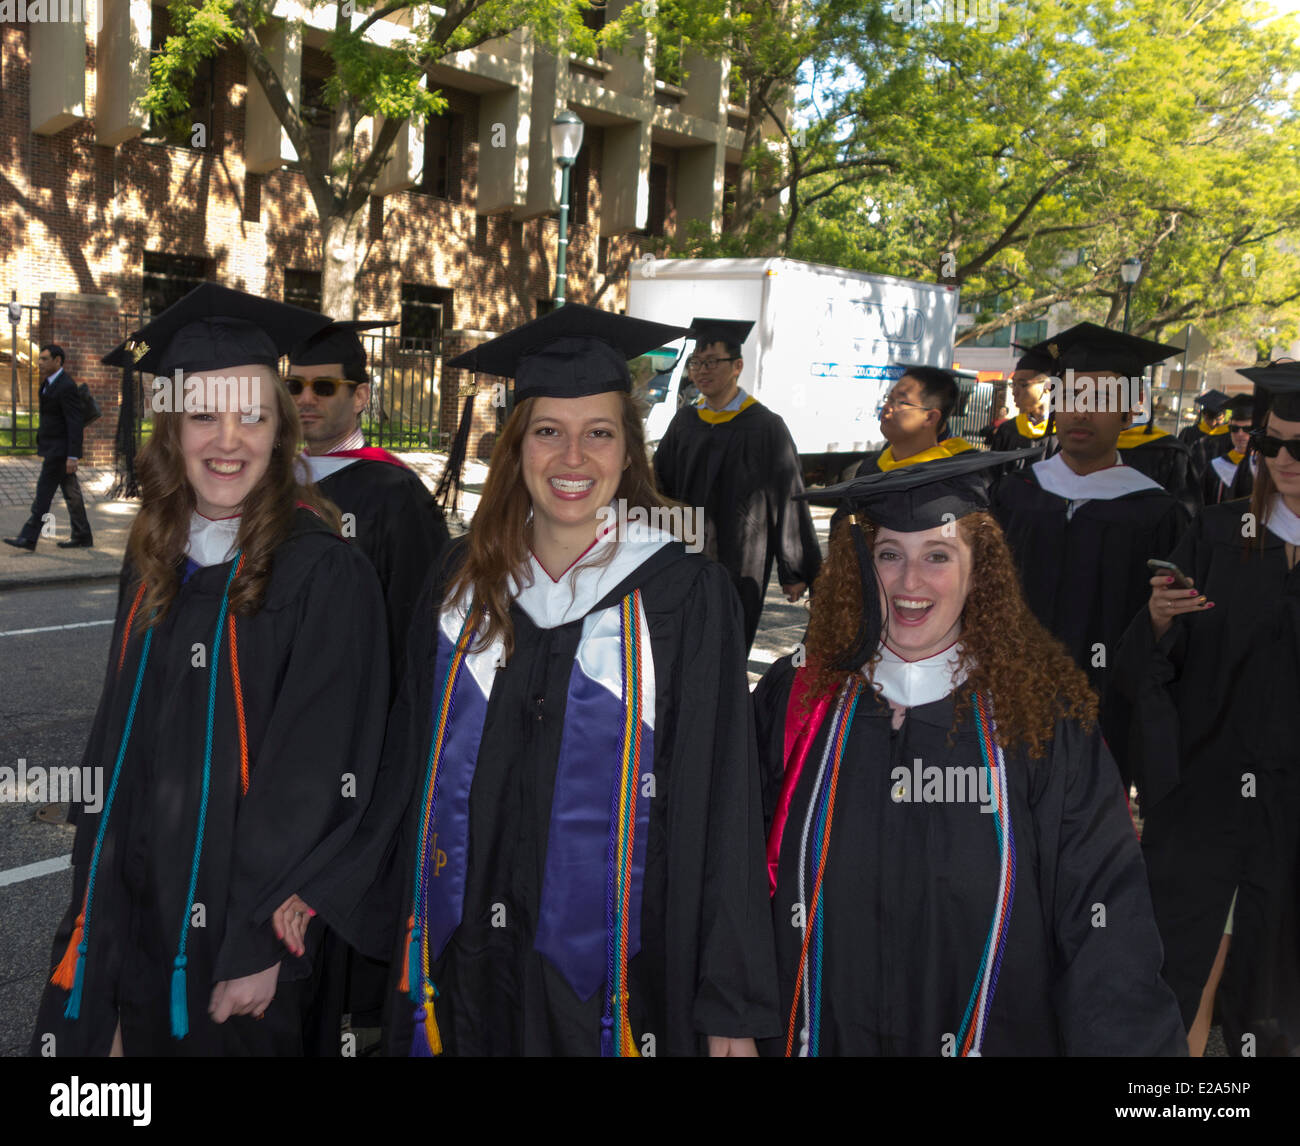 Les diplômés de l'Université de Pennsylvanie marche sur Street, Philadelphia, USA Banque D'Images